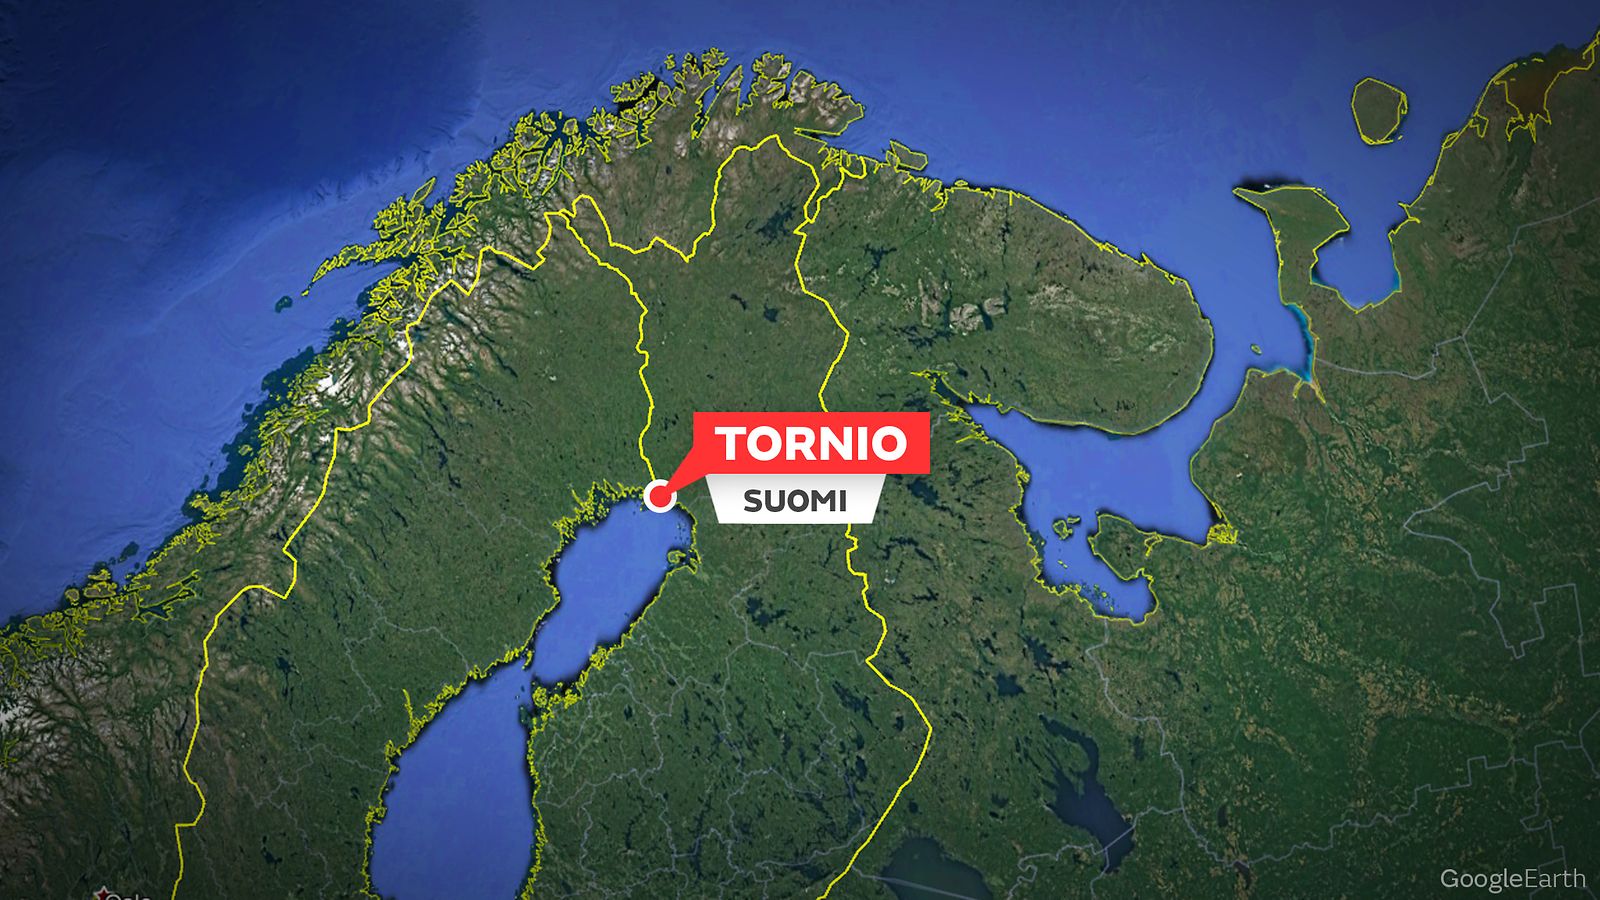 Uutta tietoa Tornion hengenvaarallisesta kaahauksesta: Lapset varastivat  Mersun perhepiiristä, 12-vuotias pakeni poliisia karkuun yli 150 kilometriä  tunnissa – 